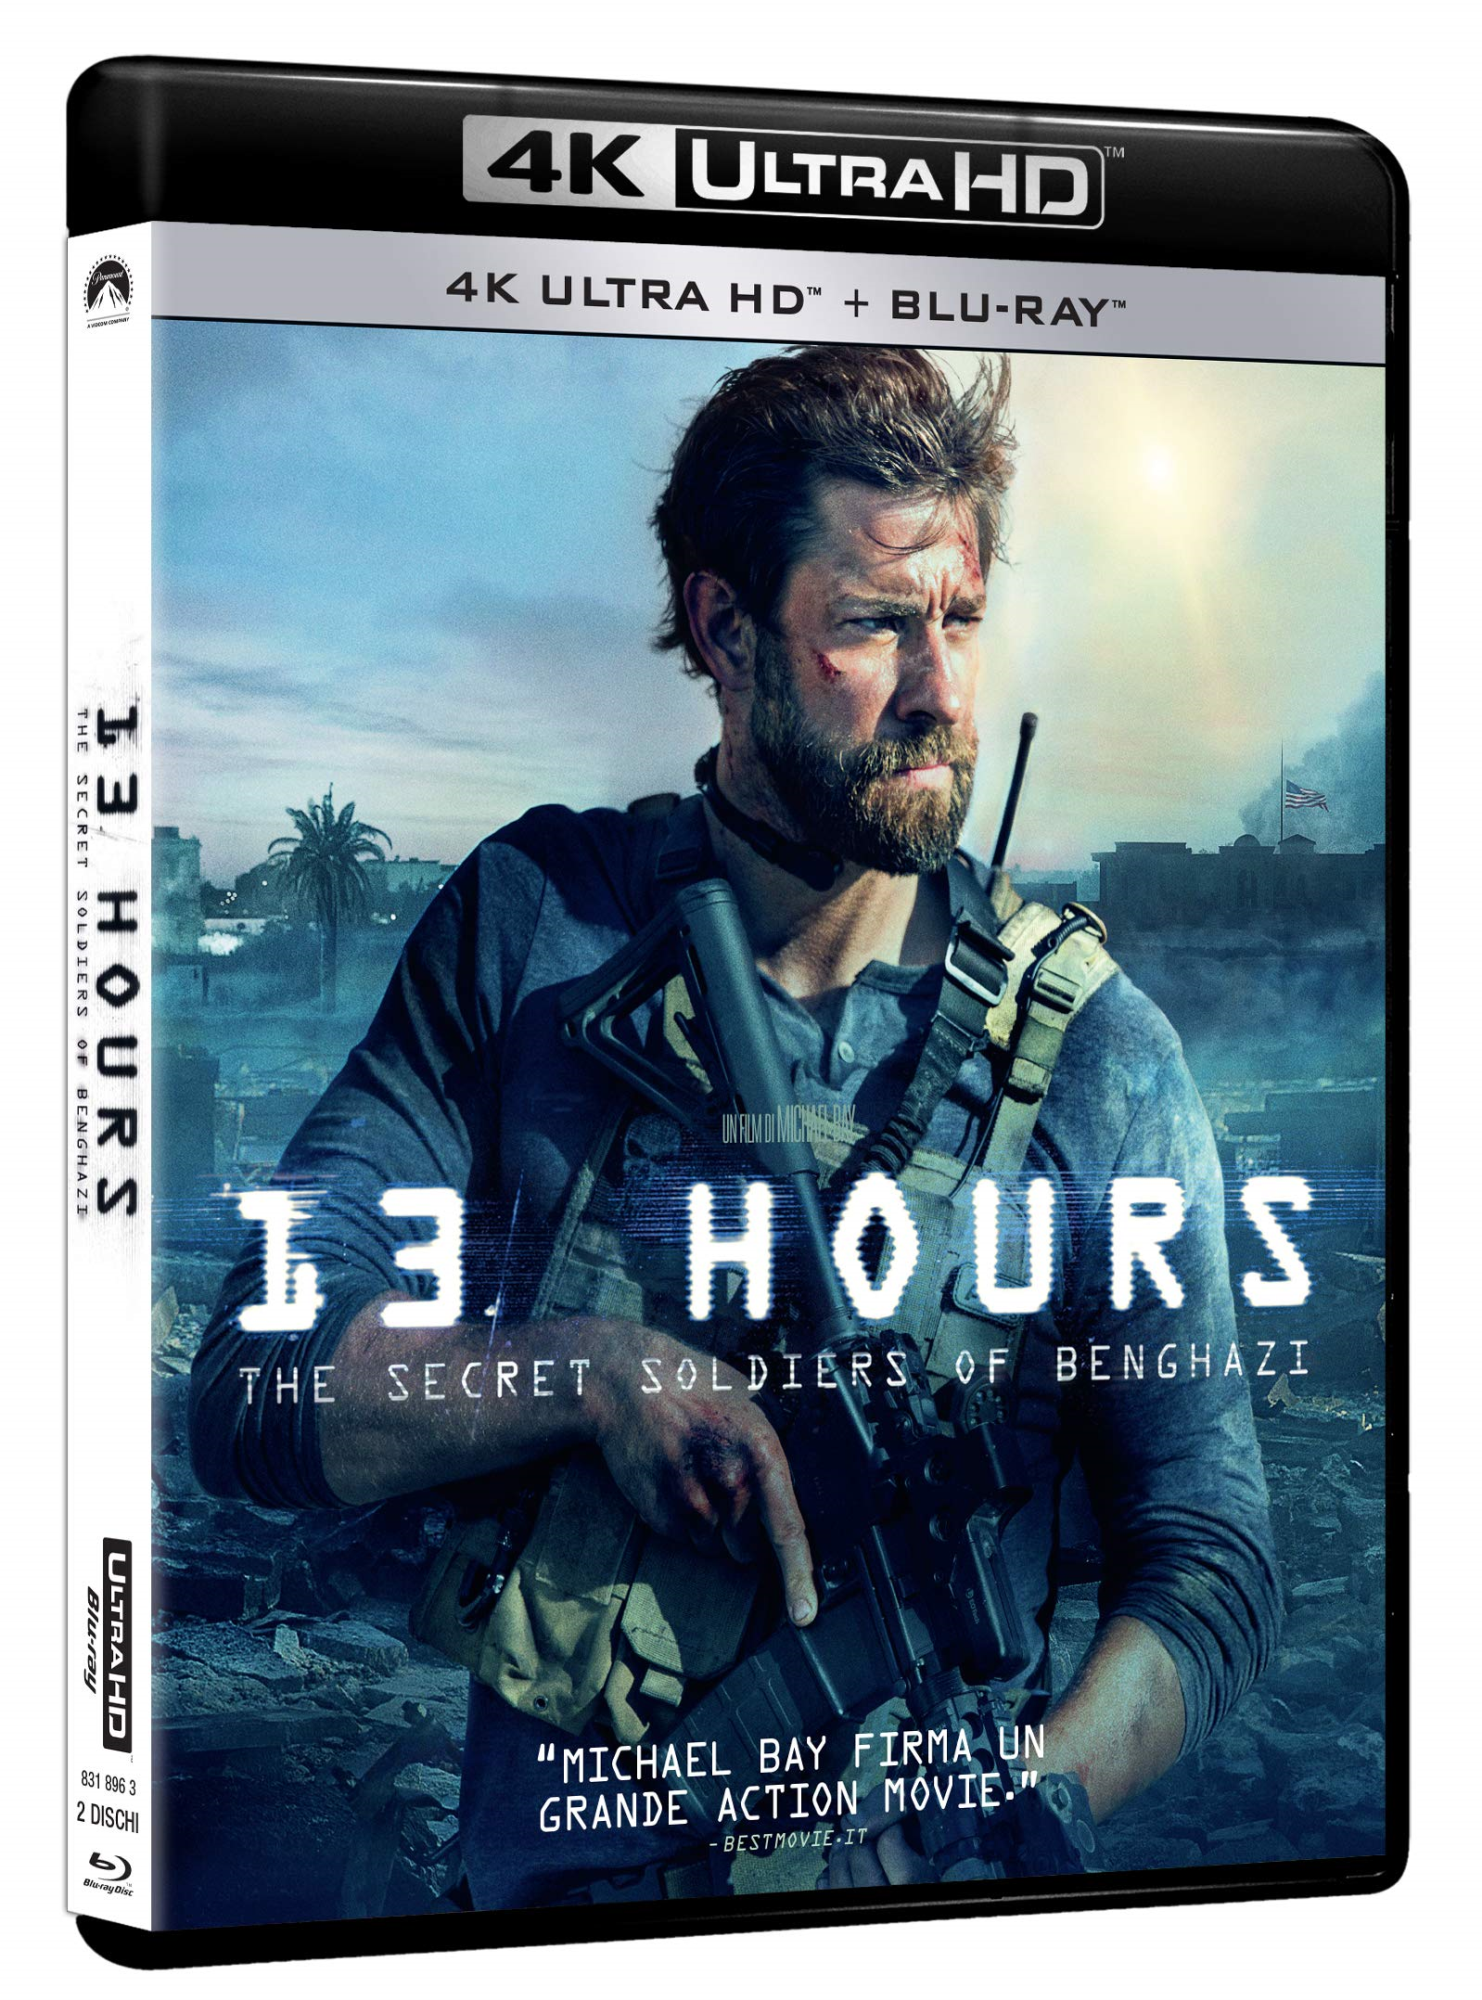 Blu-Ray 13 Hours - The Secrect Soldier Of Benghazi (4K Ultra Hd+Blu-Ray) NUOVO SIGILLATO, EDIZIONE DEL 08/04/2021 SUBITO DISPONIBILE